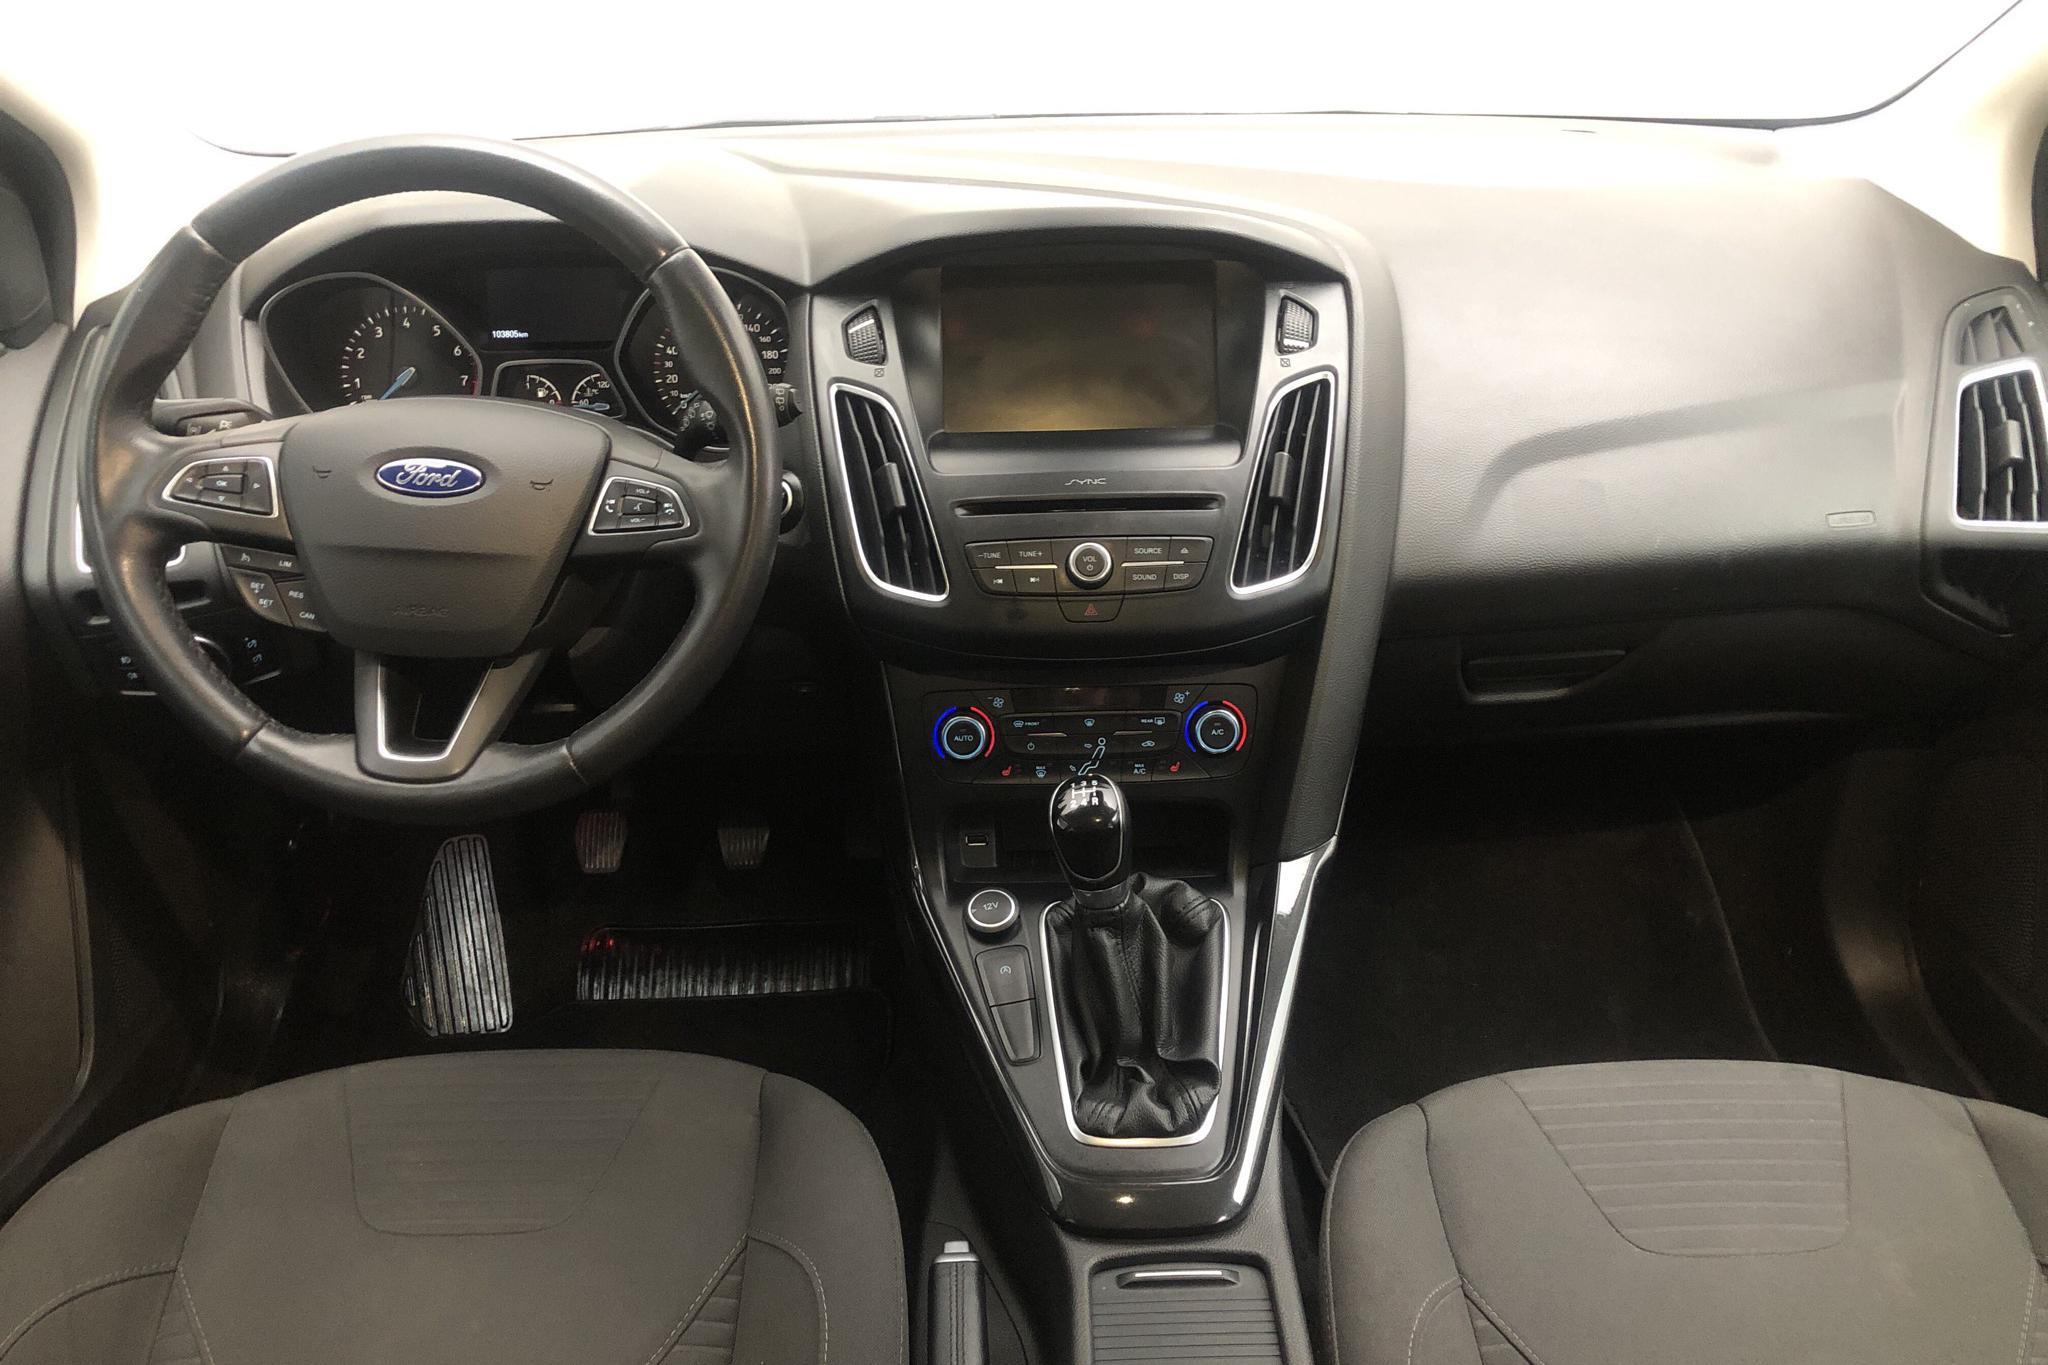 Ford Focus 1.0 EcoBoost 5dr (100hk) - 10 381 mil - Manuell - grå - 2016